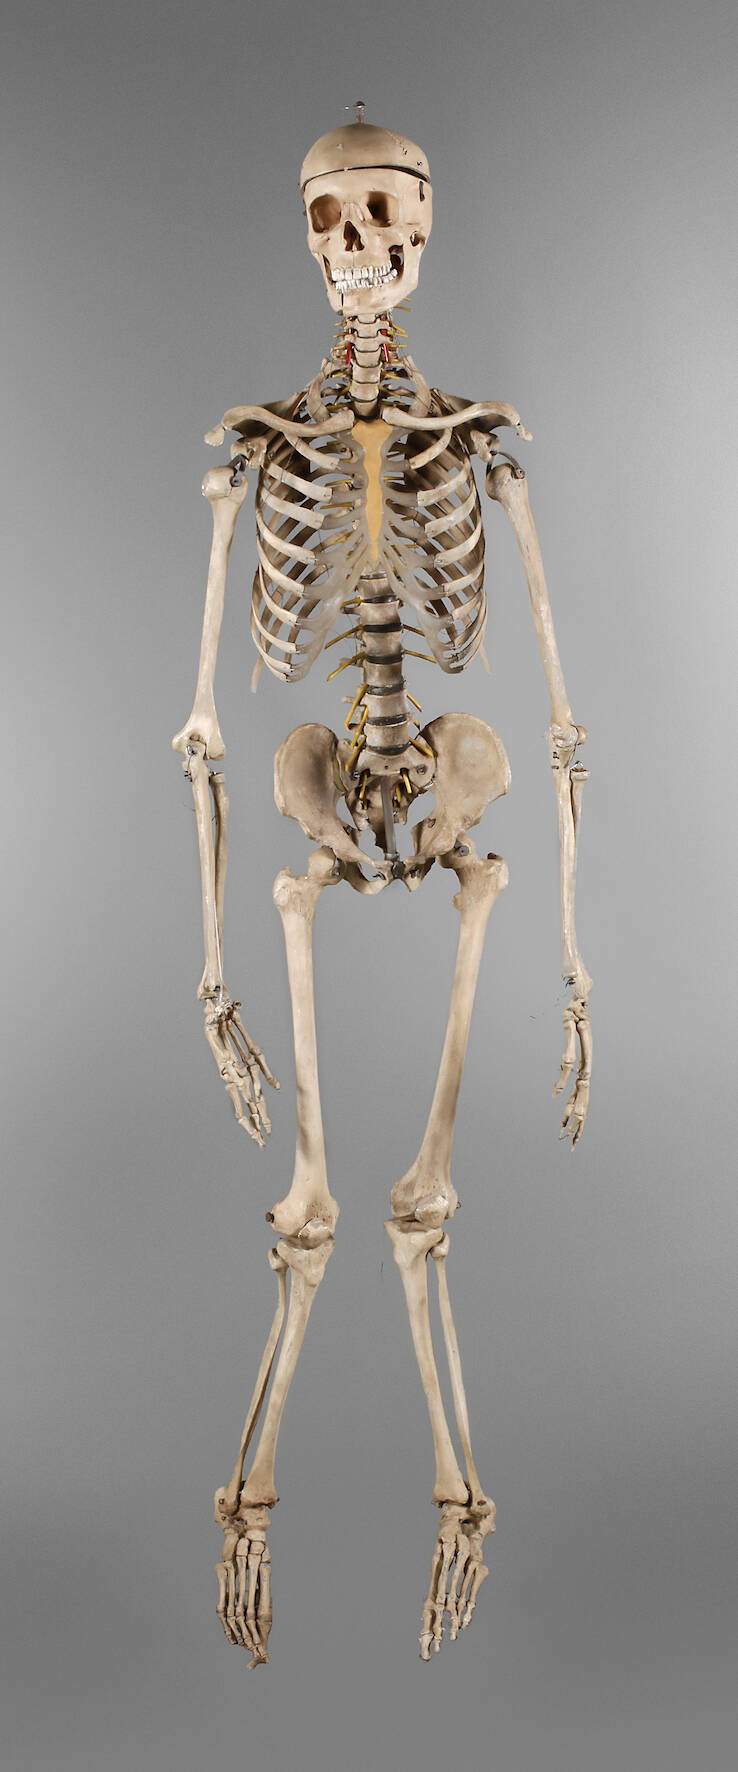 Anatomiemodell des menschlichen Skeletts